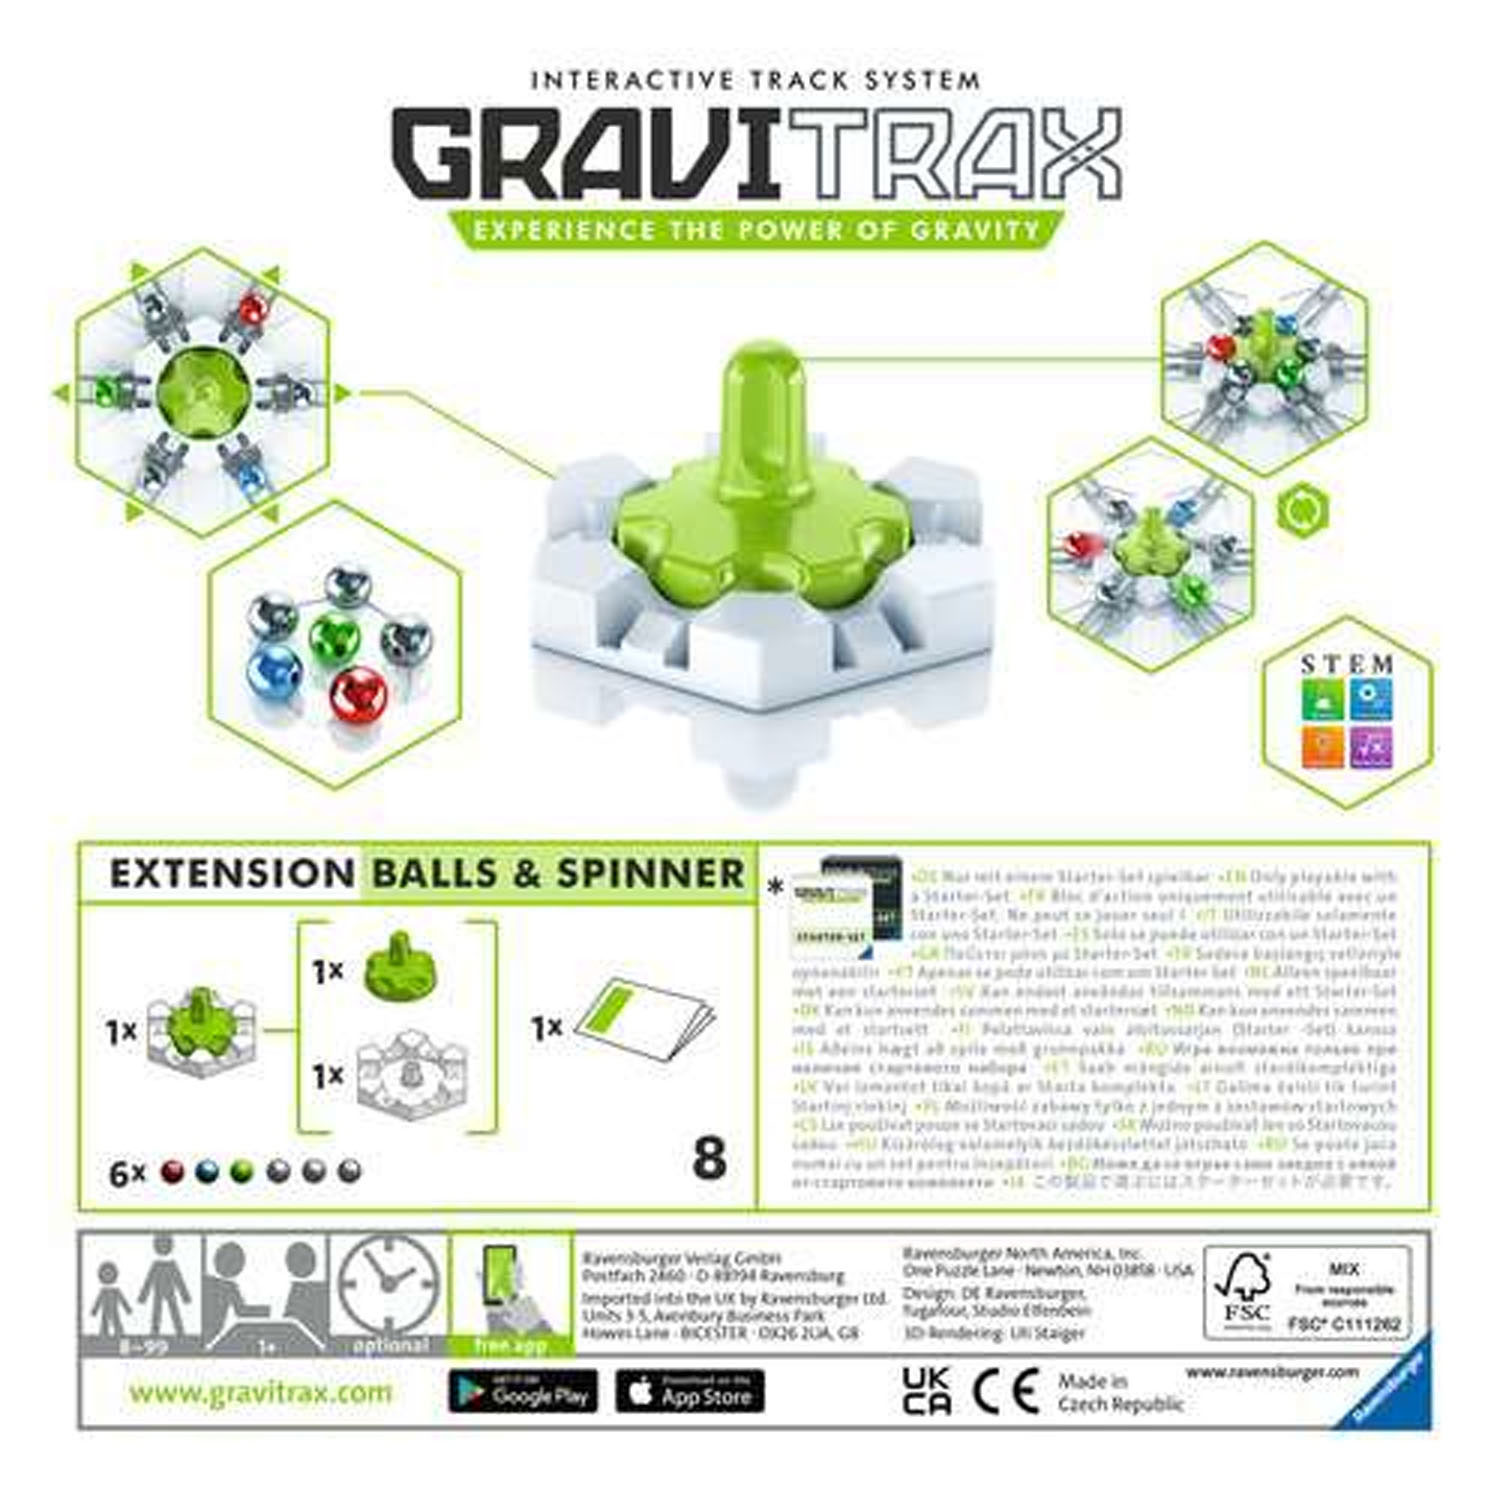 GraviTrax Uitbreidingsset - Balls & Spinner